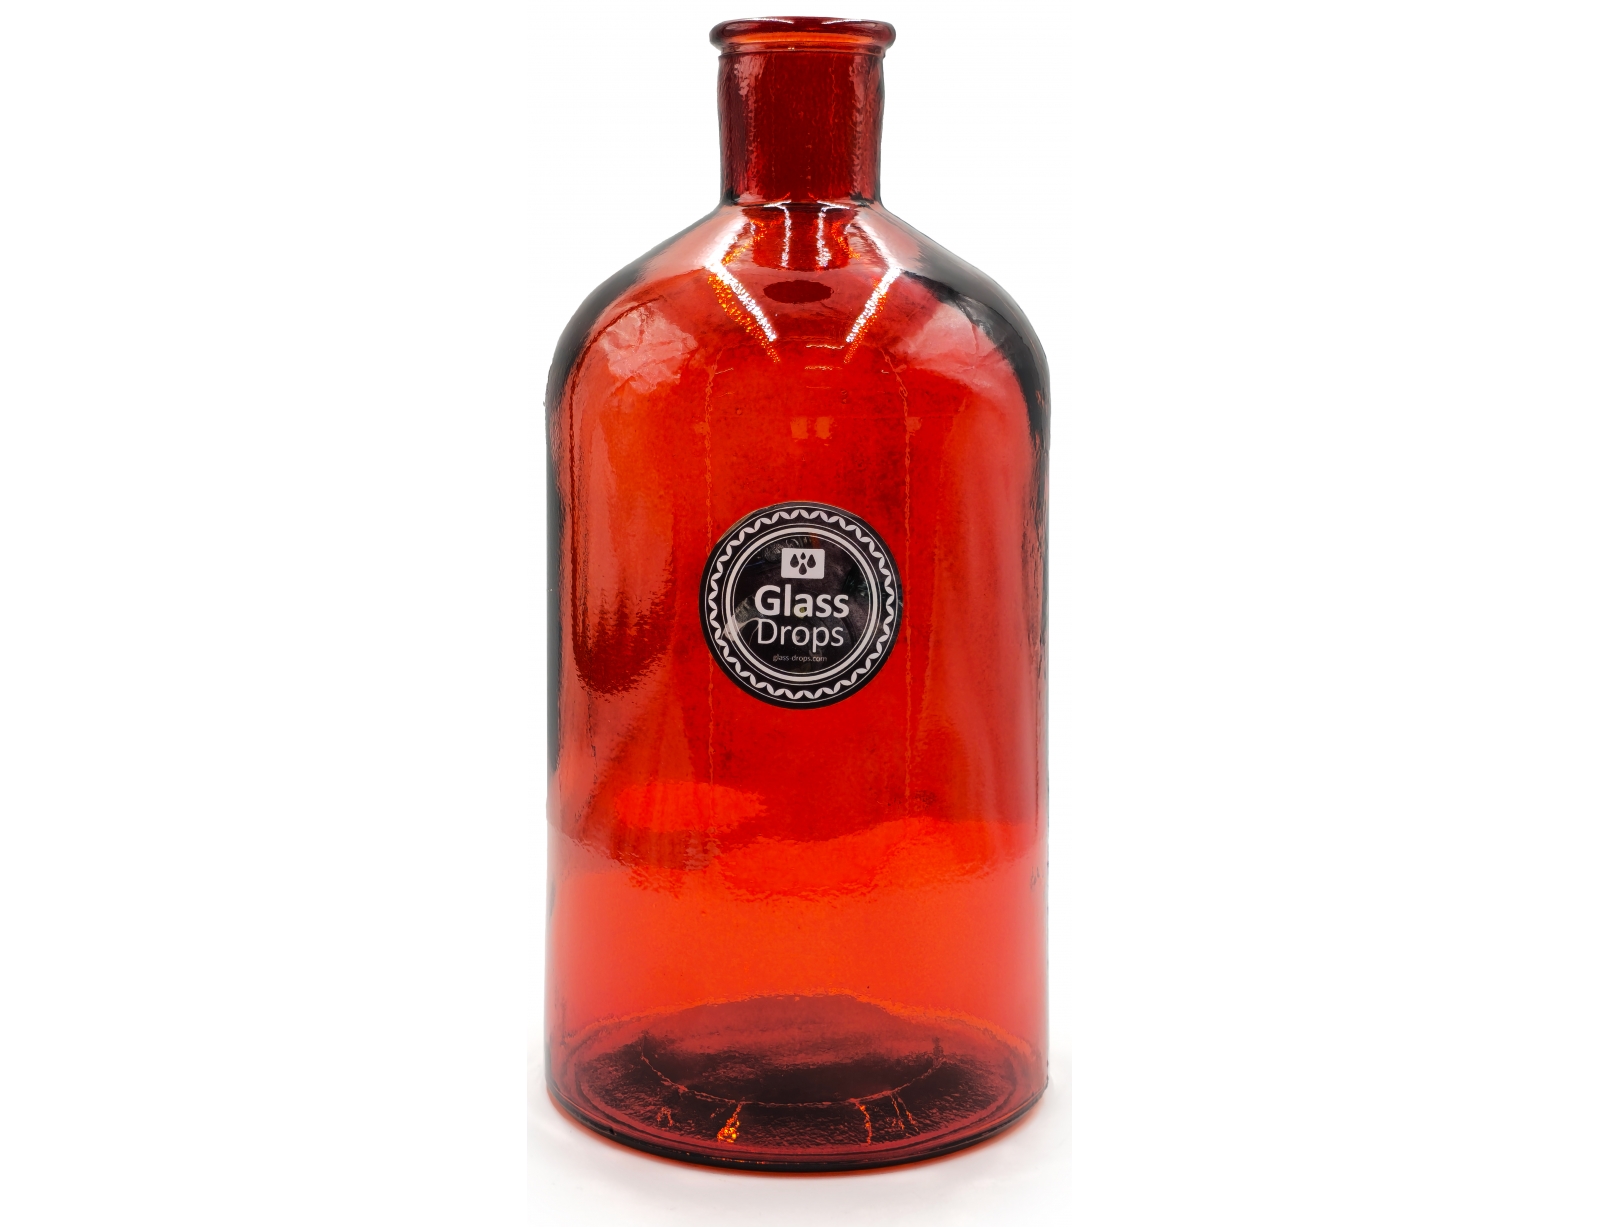 Εικόνα Διακοσμητικό Μπουκάλι Glass Drops Retro (5711DB343) Aπό 100% ανακυκλωμένο γυαλί, Xωρητικότητας 2.6L, Διαστάσεων Ø 13.5 x Υ 28 cm, Pumpkin